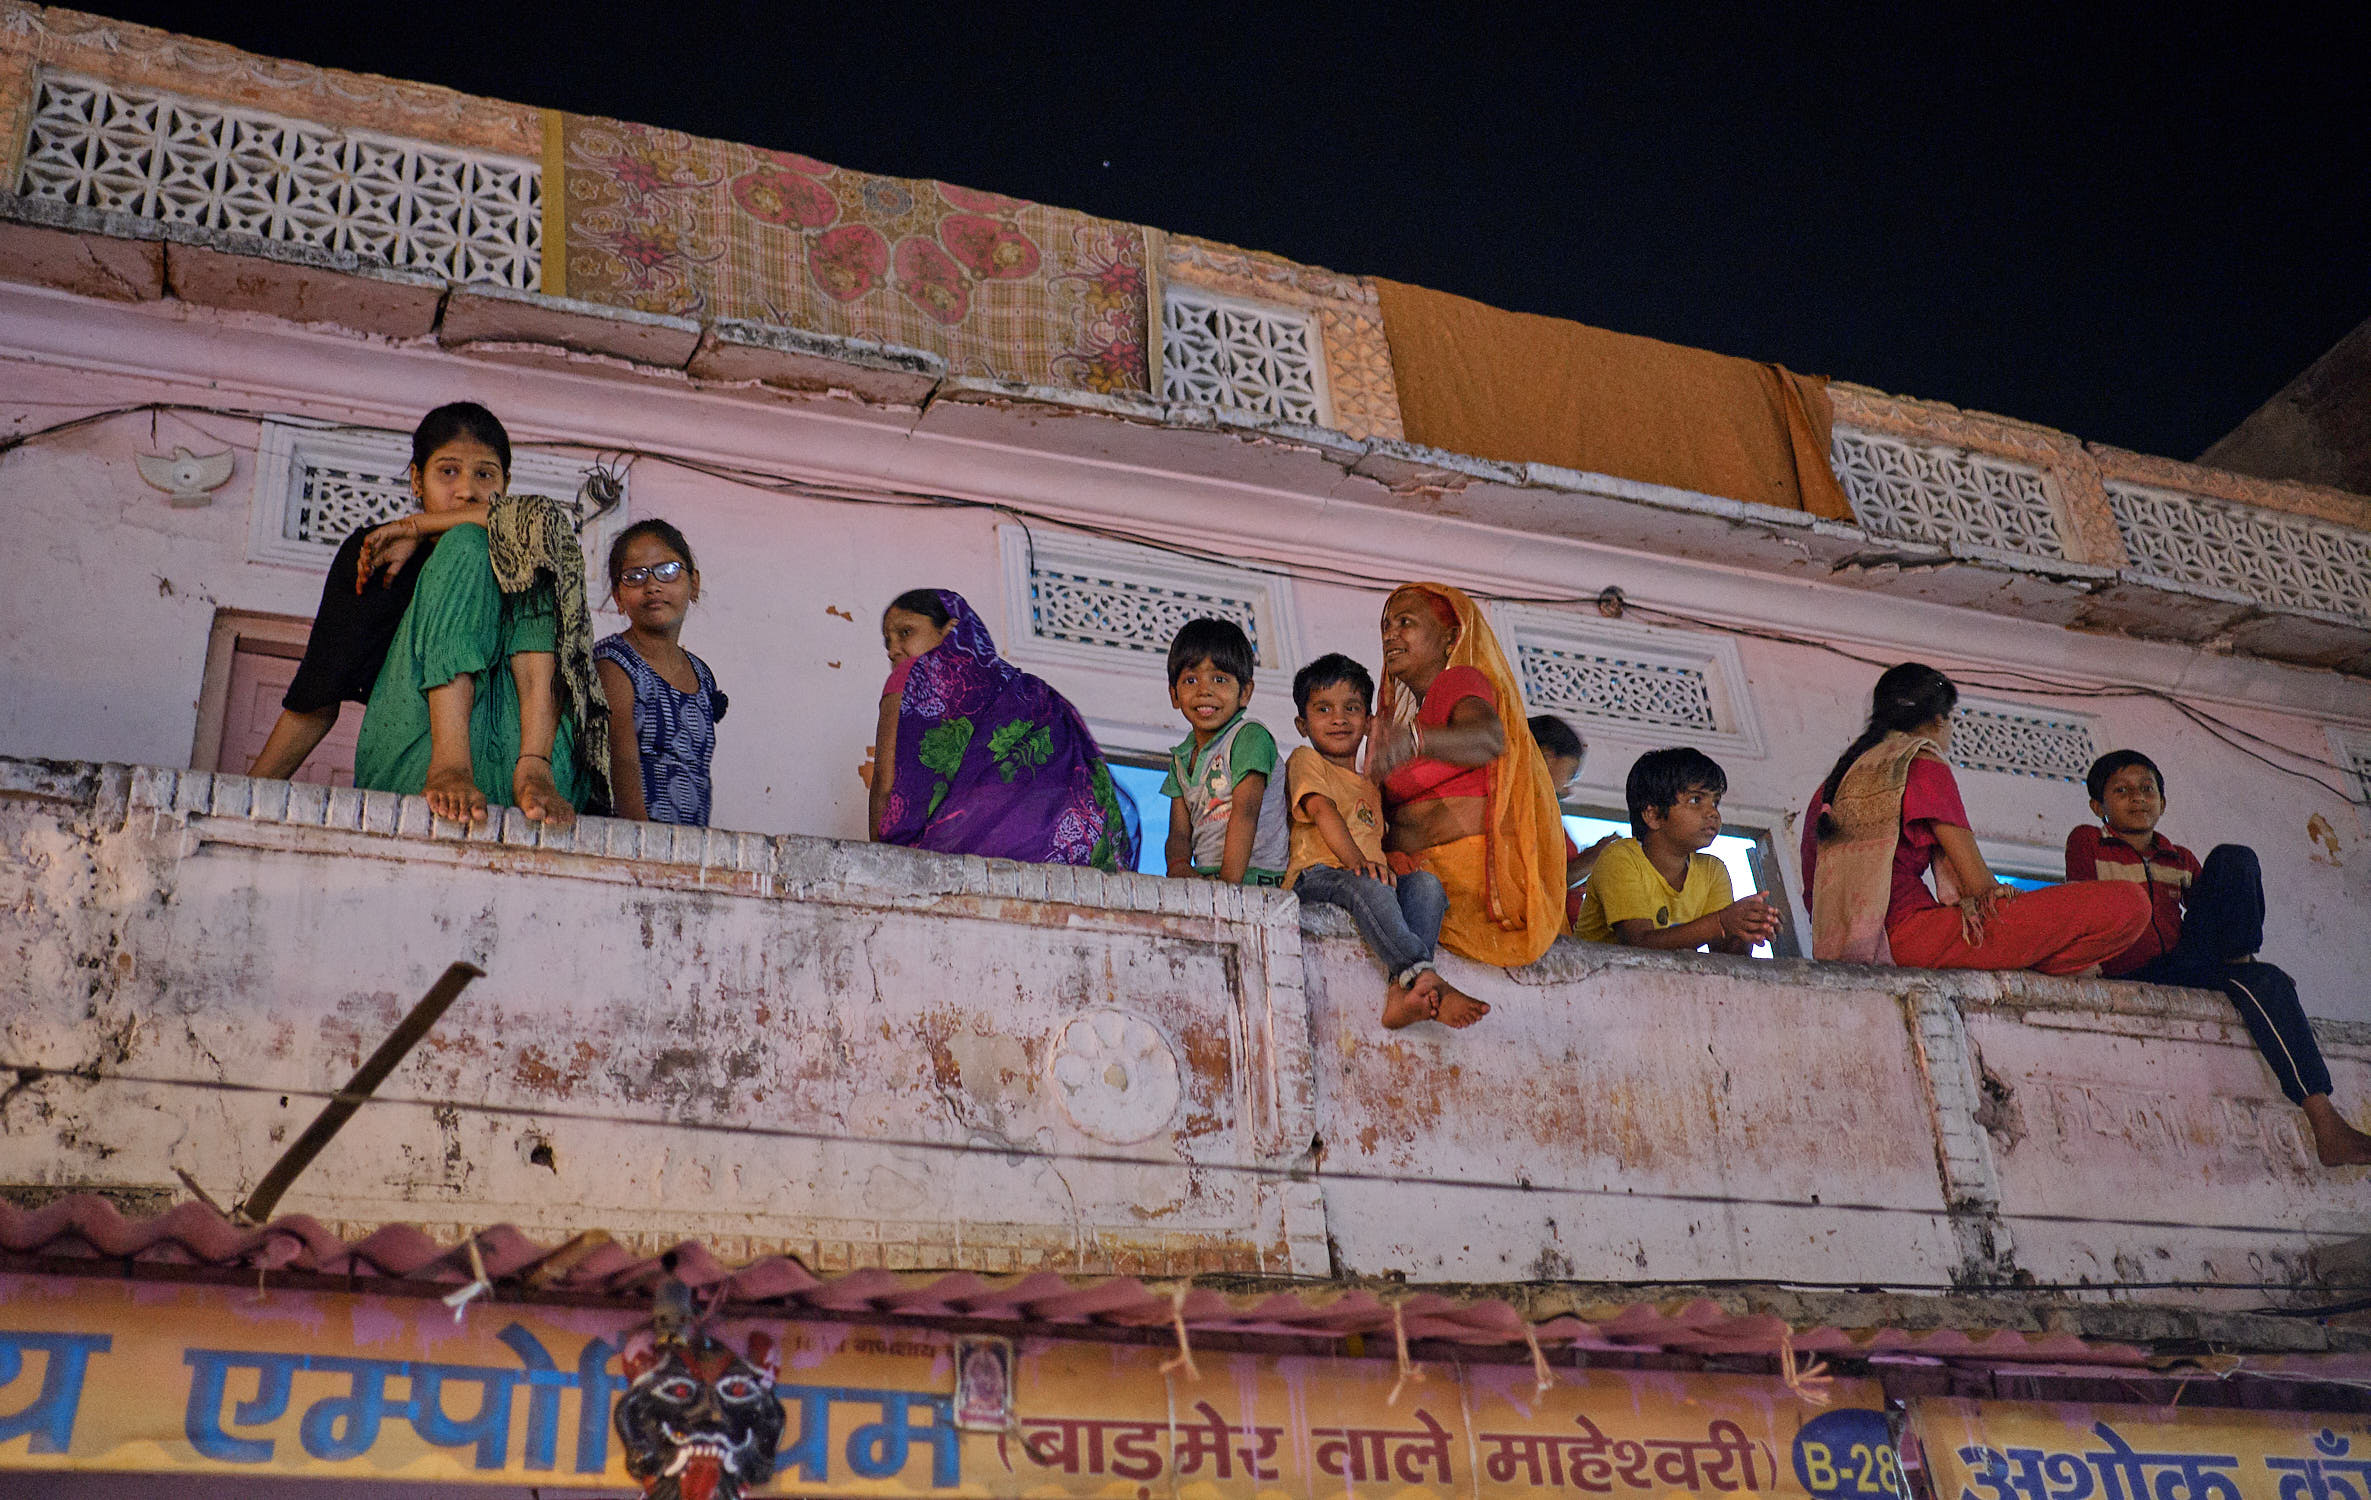 Family on ledge in Jaipur, India